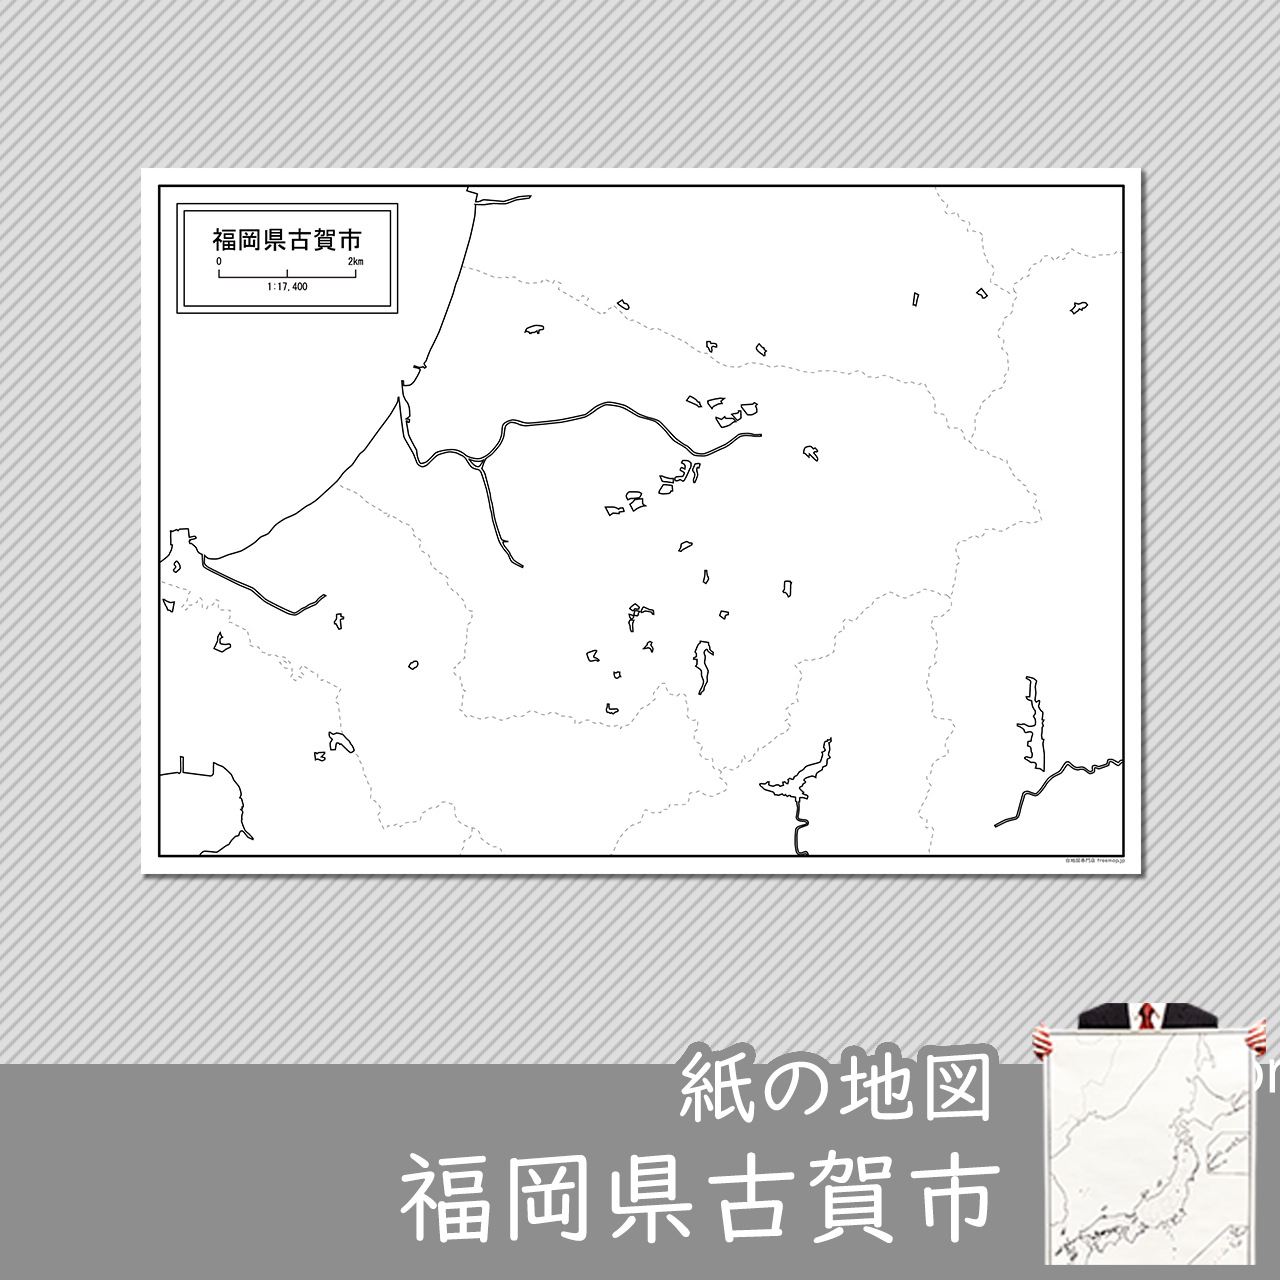 古賀市の紙の白地図のサムネイル